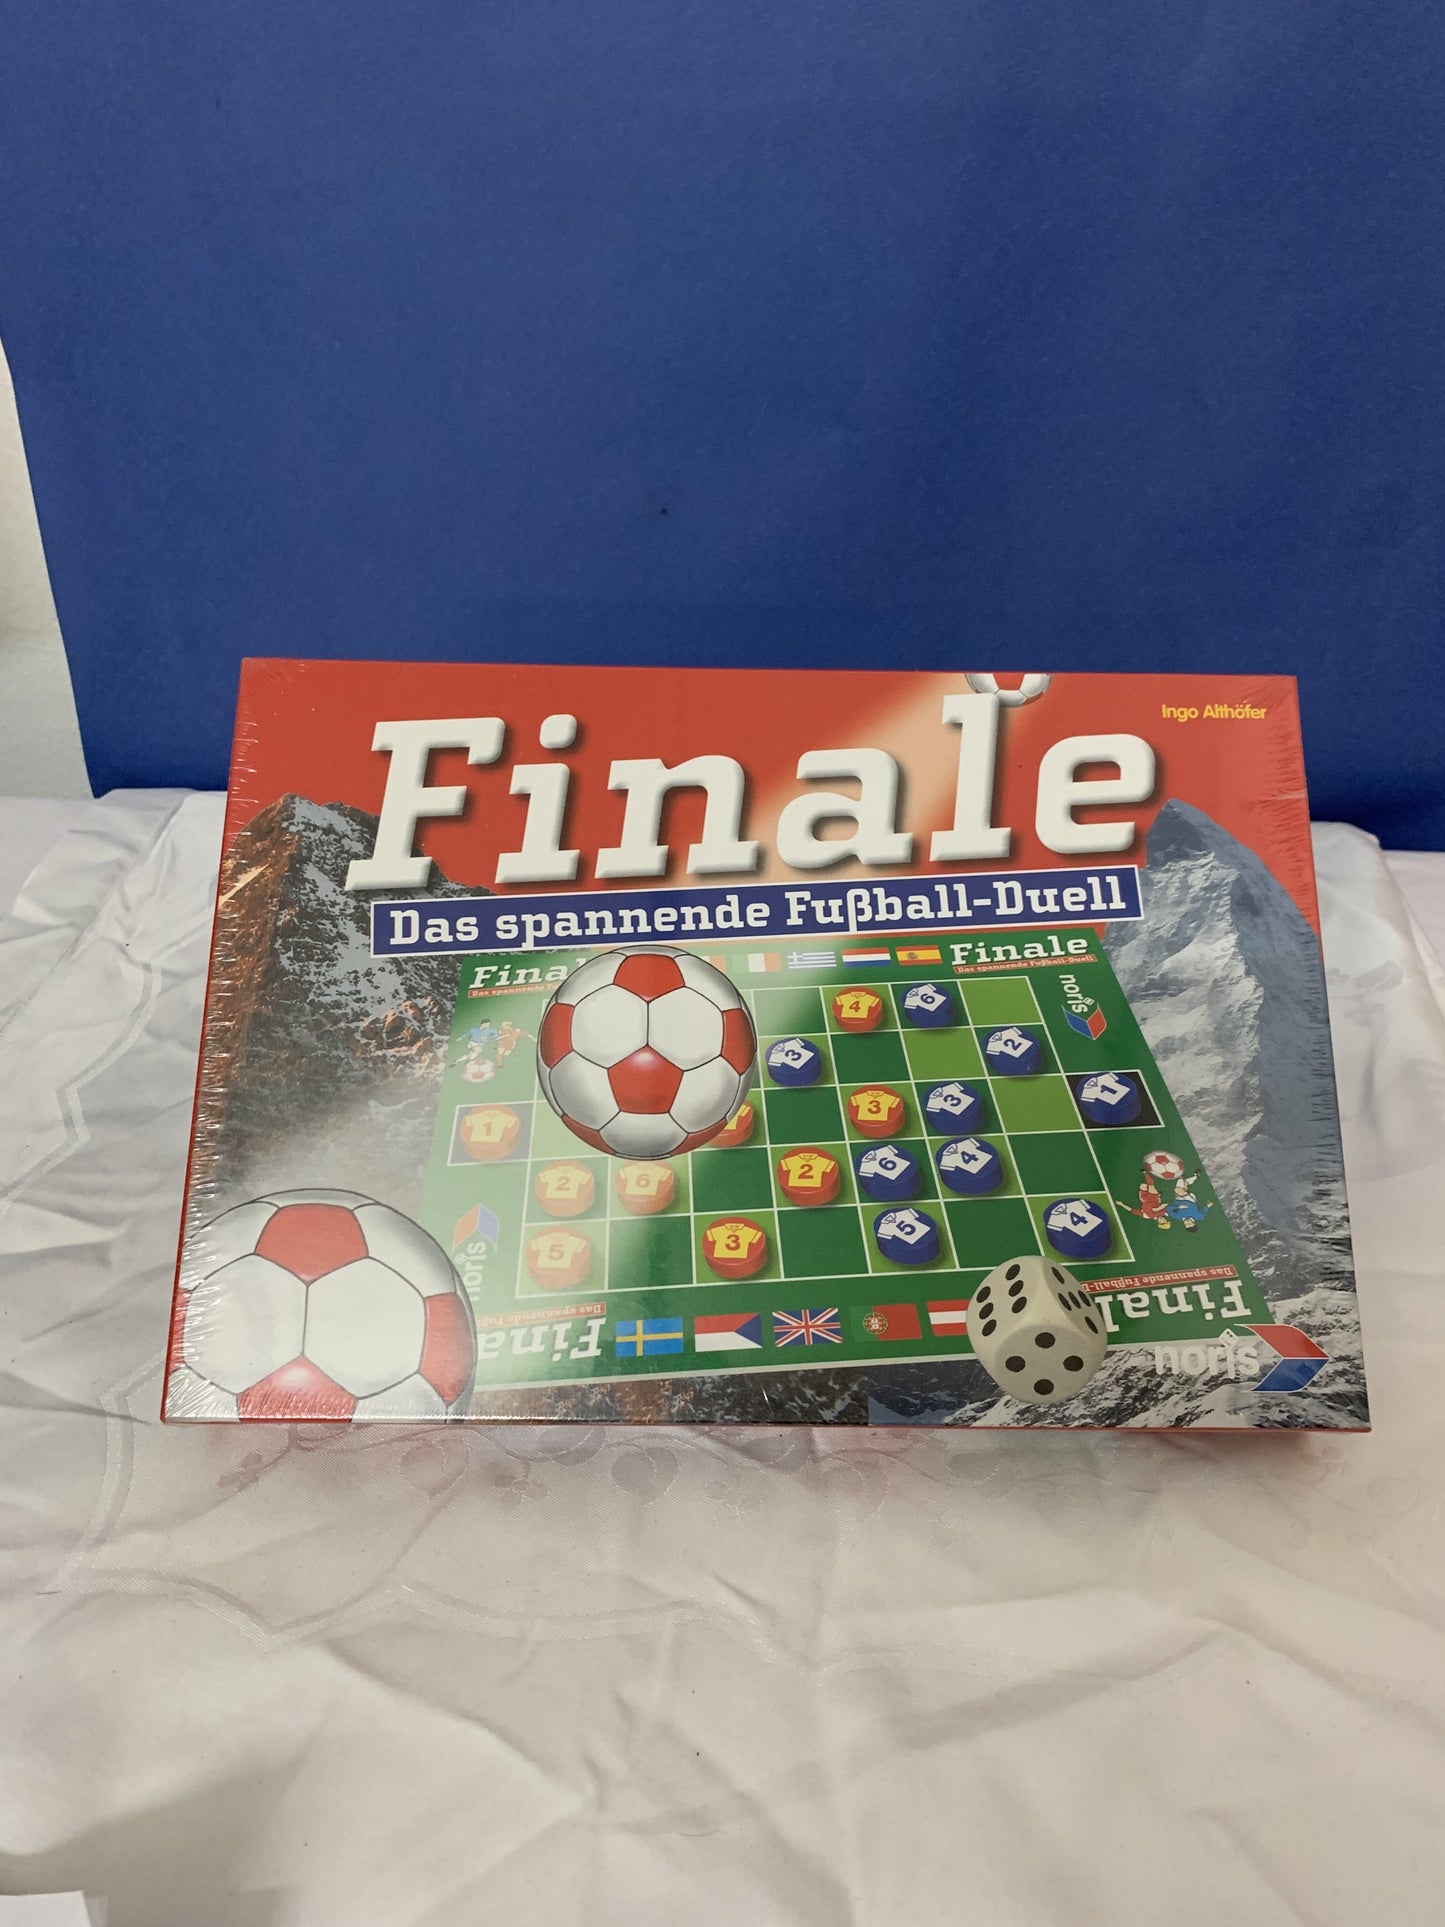 Das spannende Fußball "Finale", neue in Verpackung